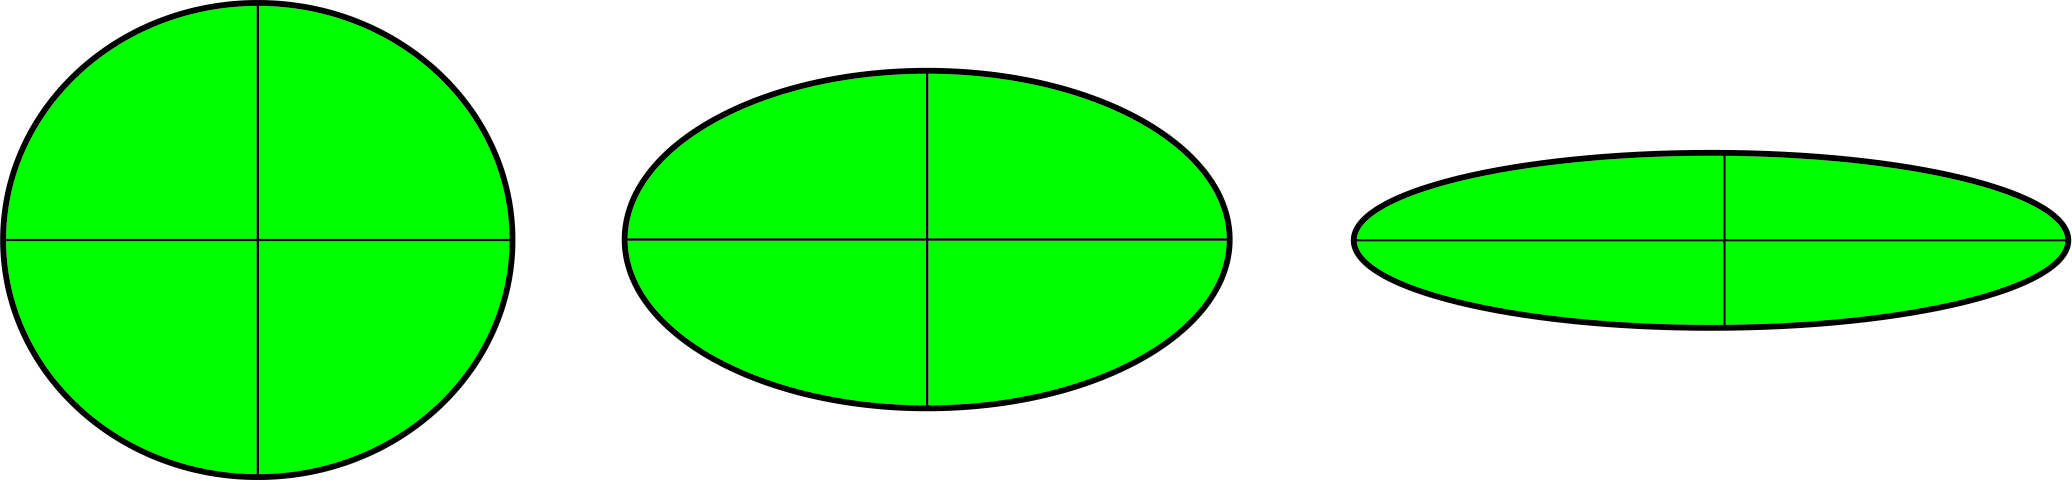 Obr. 3. Deformácia referenčného kruhu na elipsu